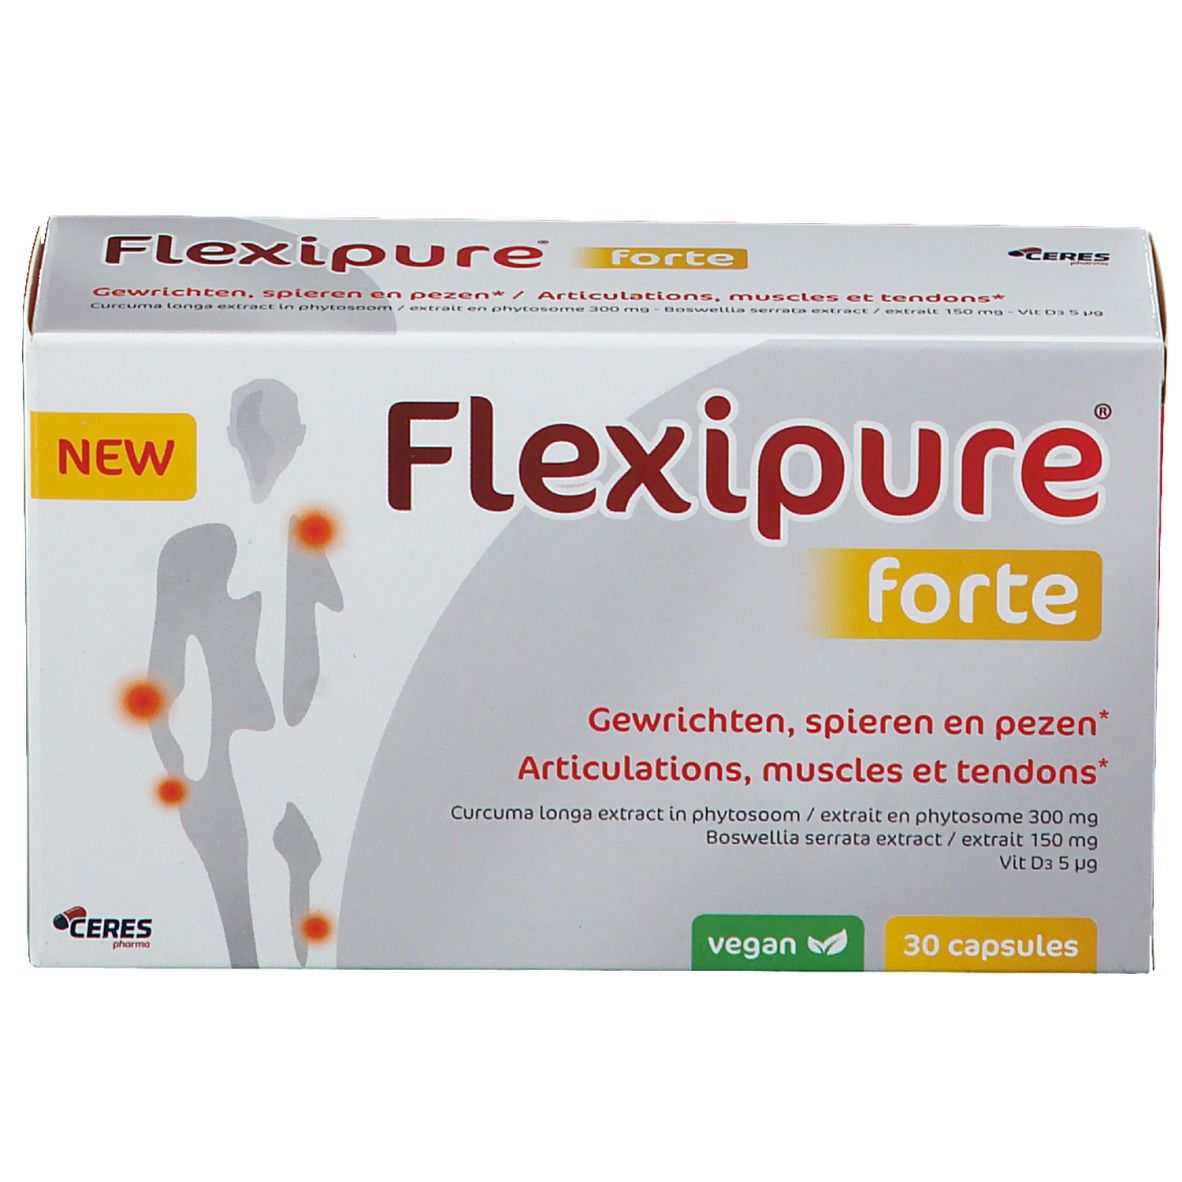 FlexiPure Forte